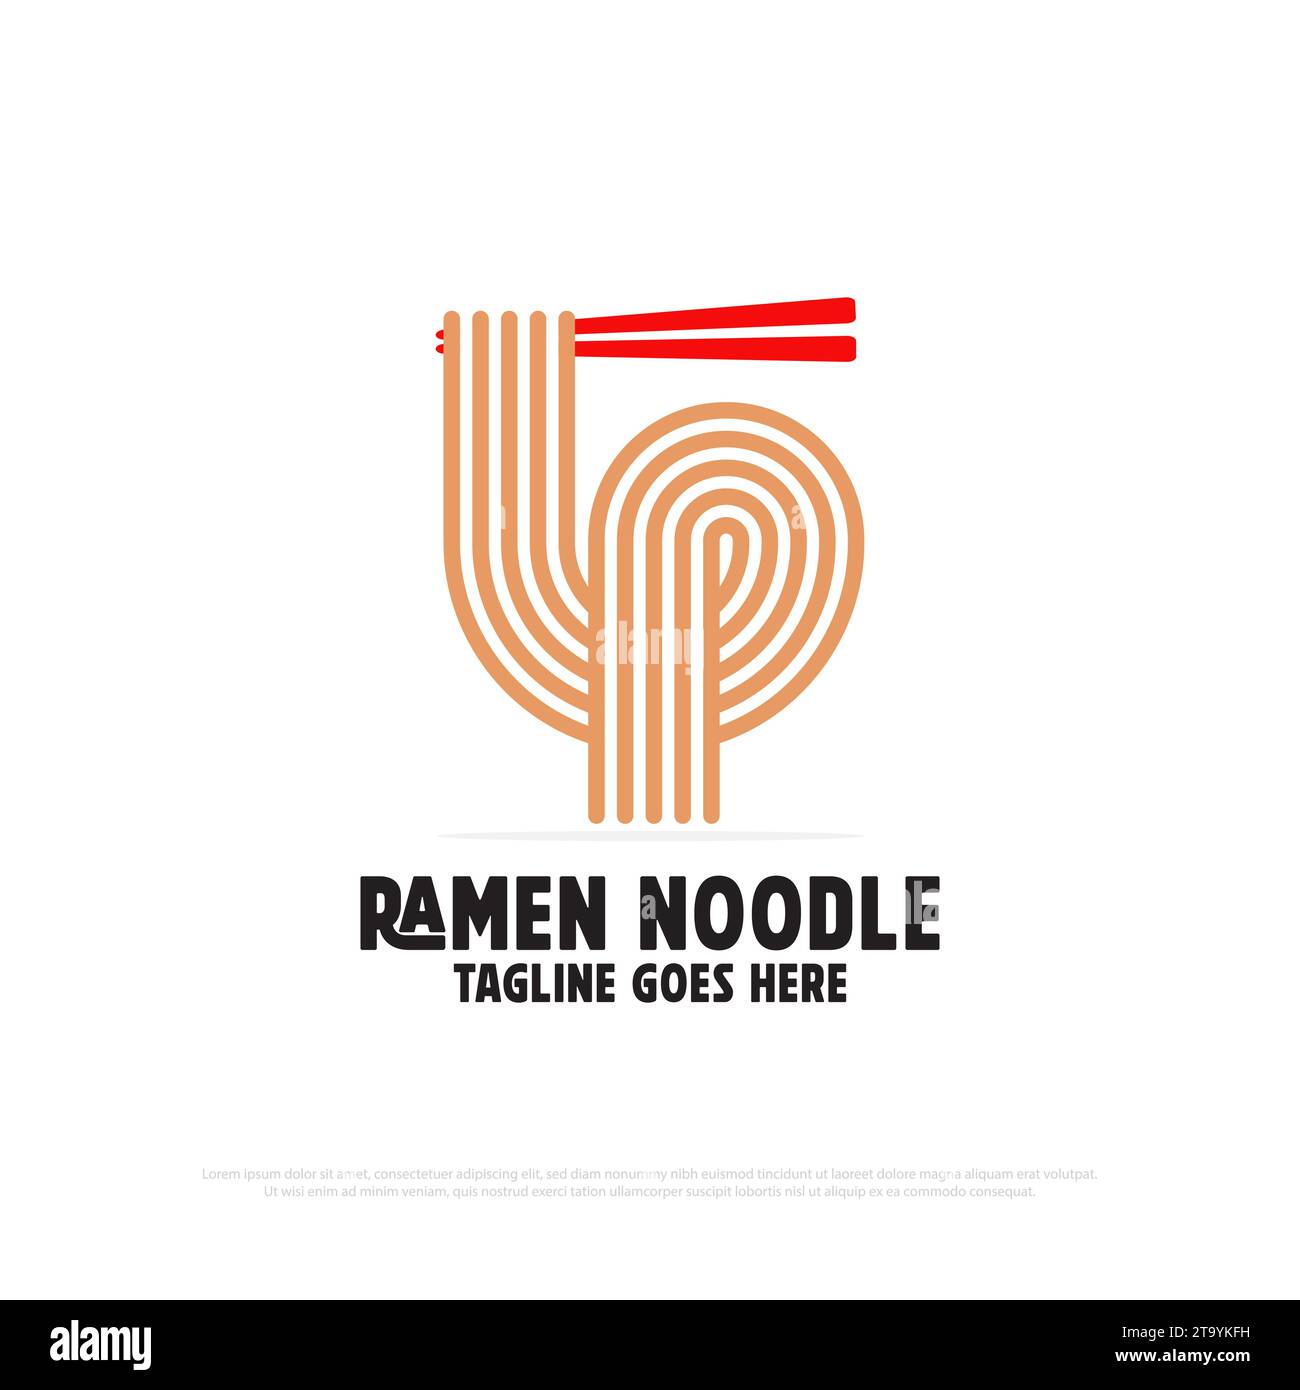 Simbolo del logo Ramen noodle, simbolo del logo di cibo e bevande, illustrazione vettoriale, ideale per l'idea del logo di un ristorante giapponese Illustrazione Vettoriale